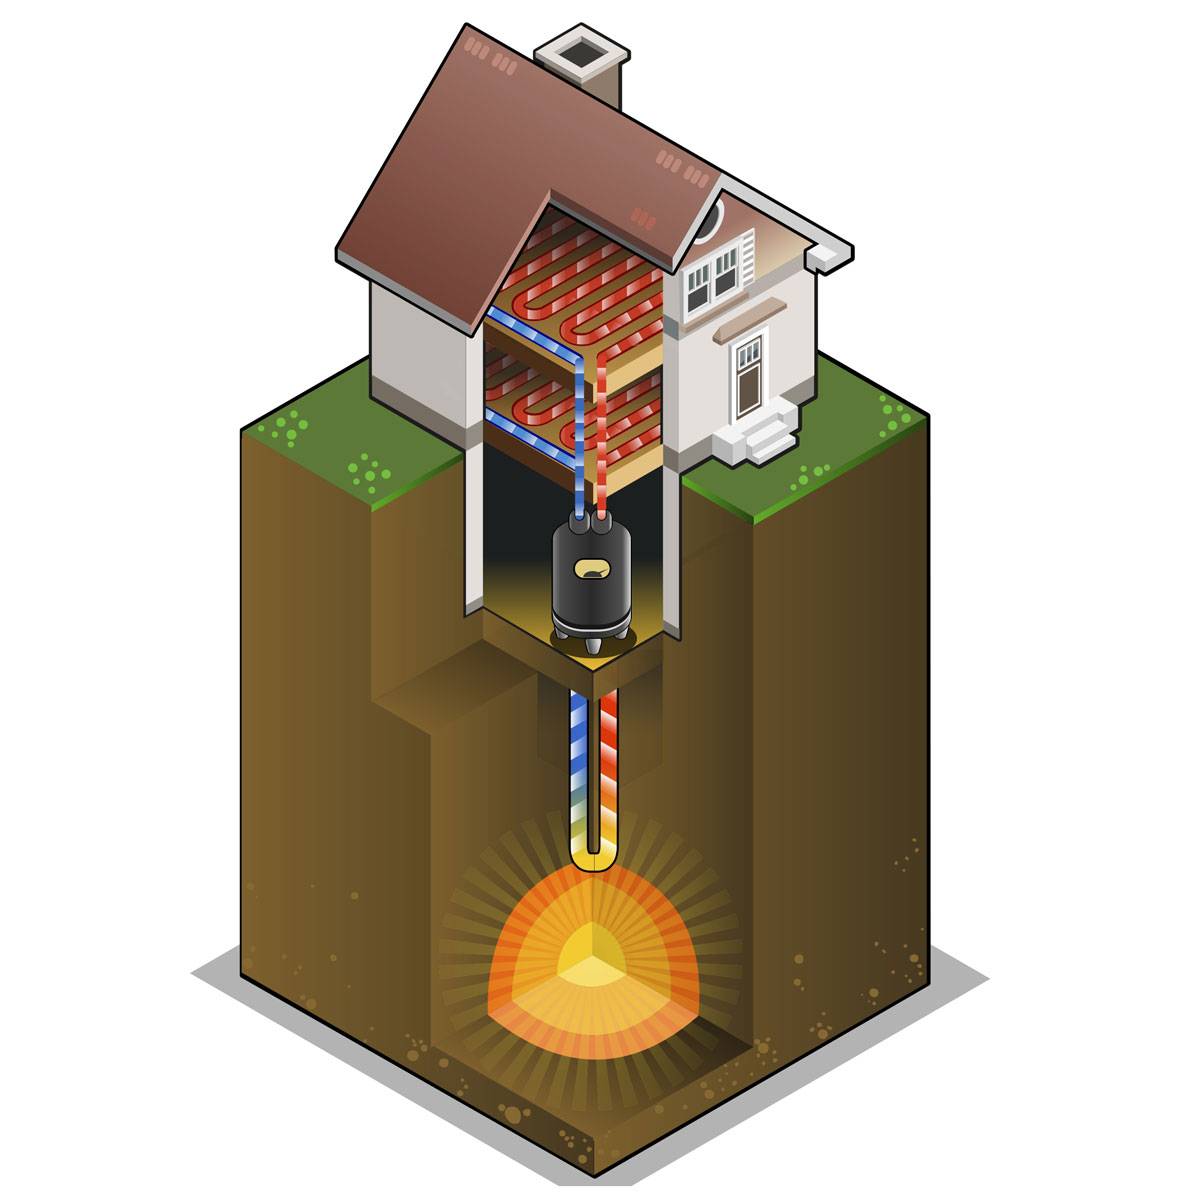 Тепловой насос для геотермального отопления